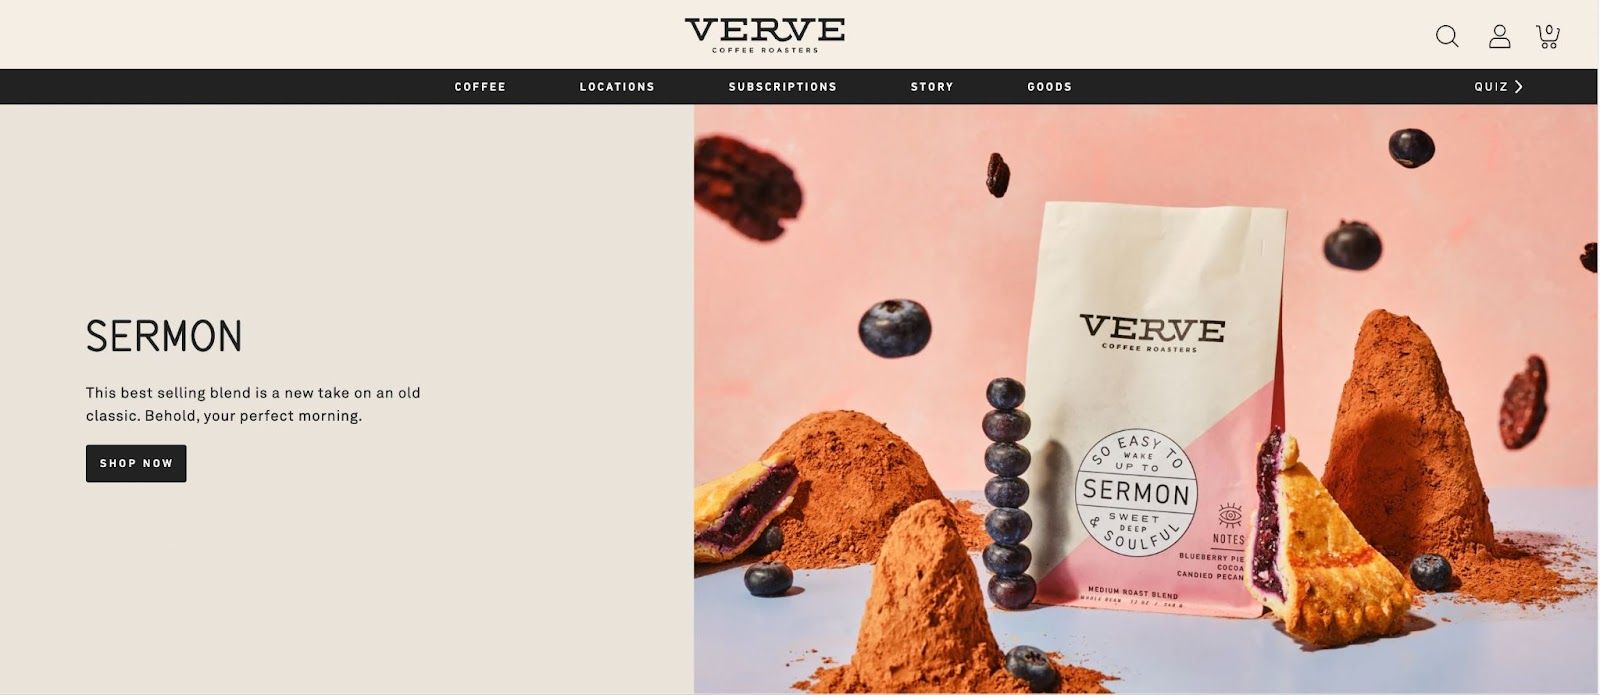 Verve Coffee Roasters’ homepage. 